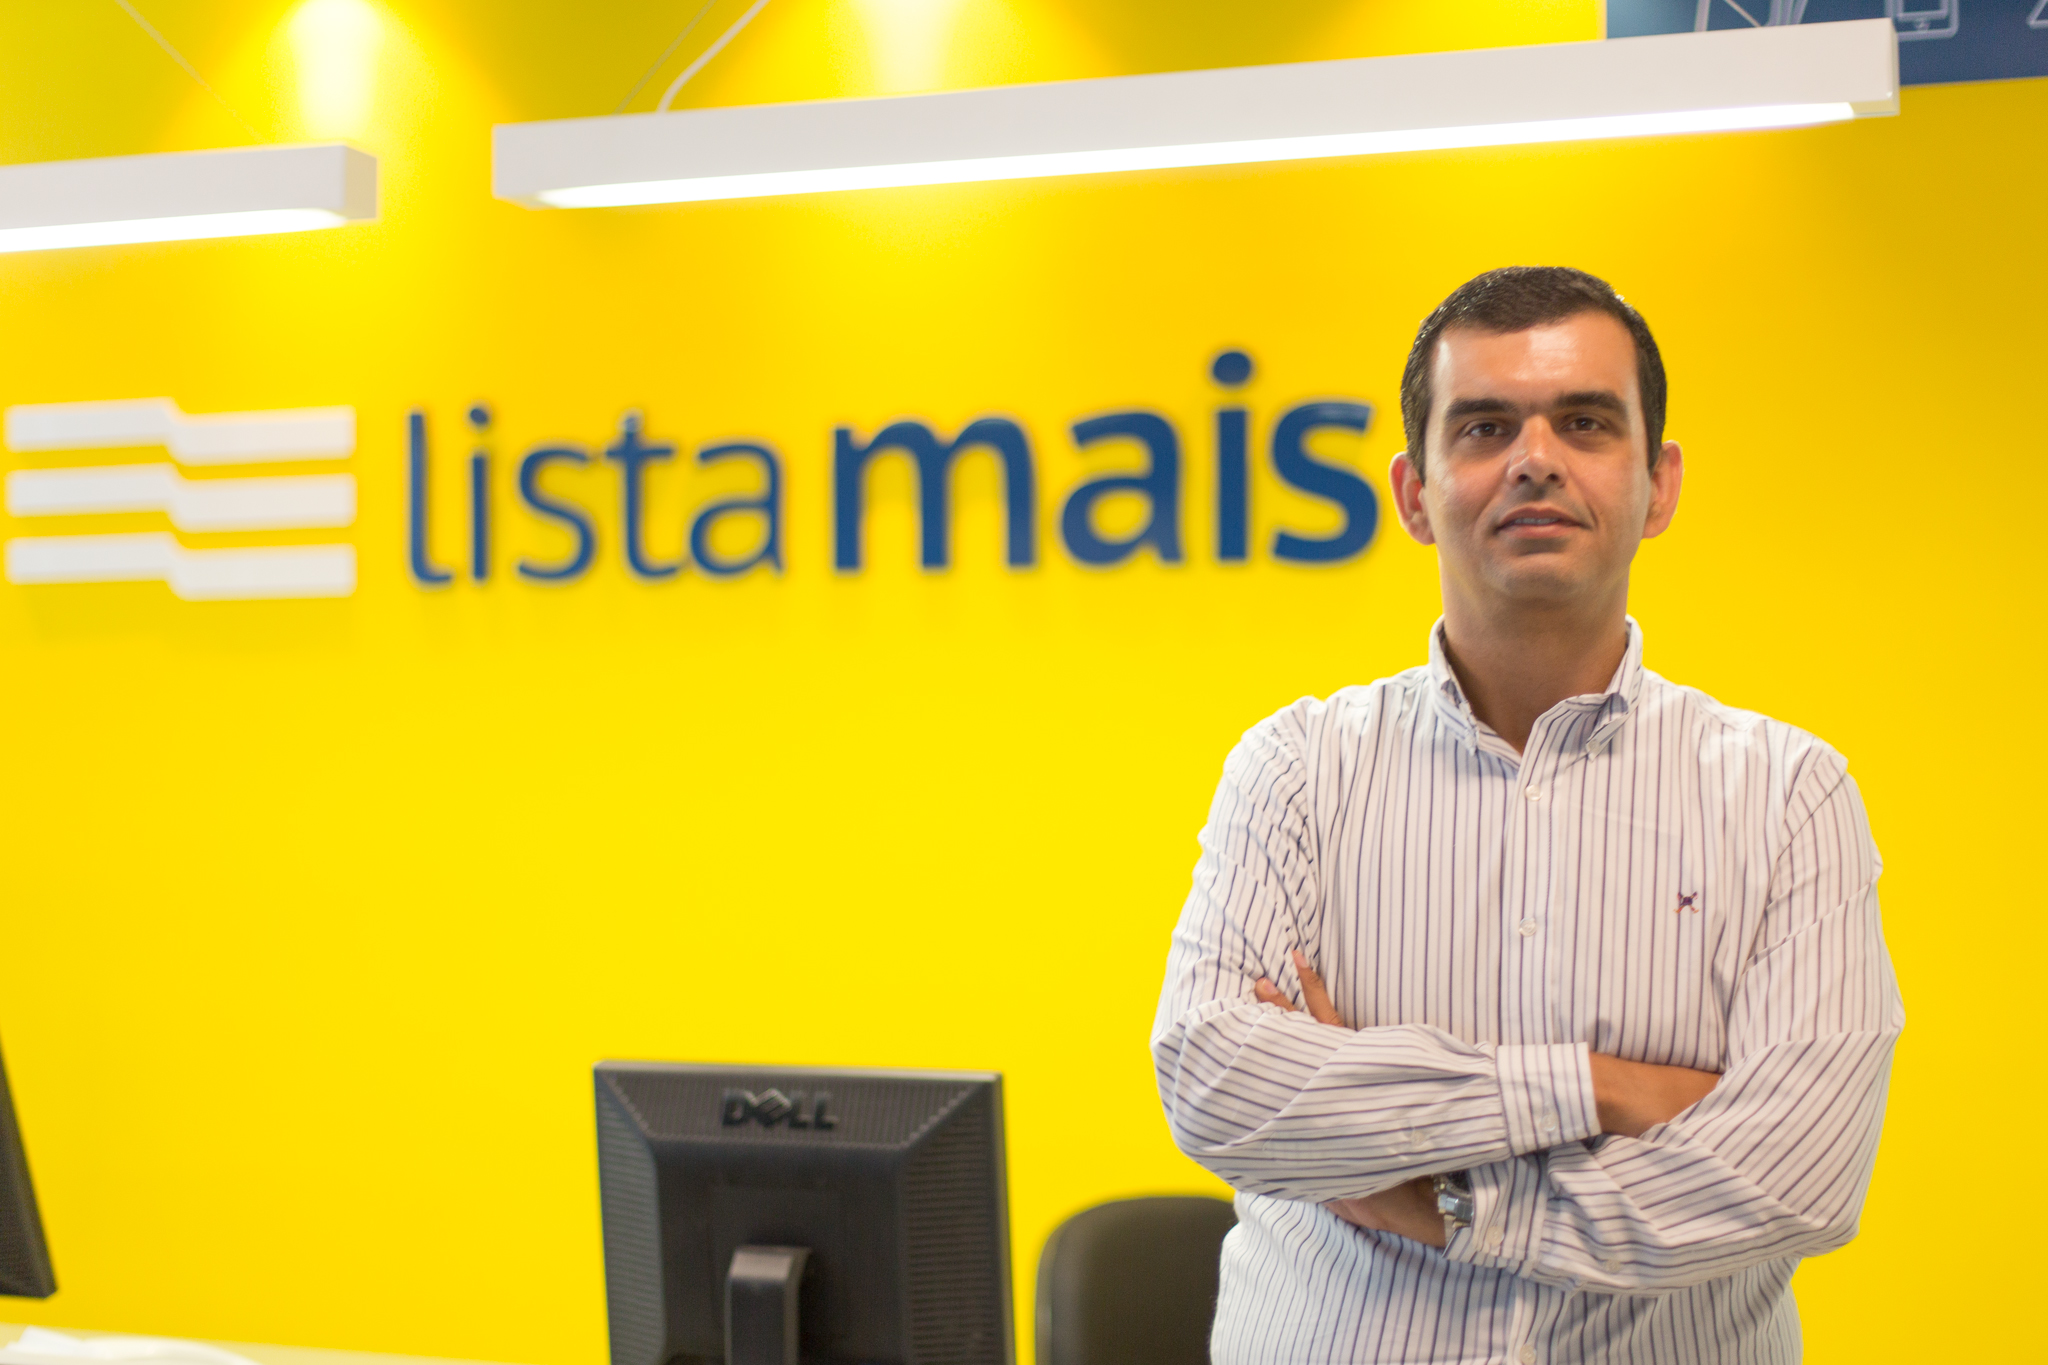 João Paulo Gonçalves - CEO da Lista Mais